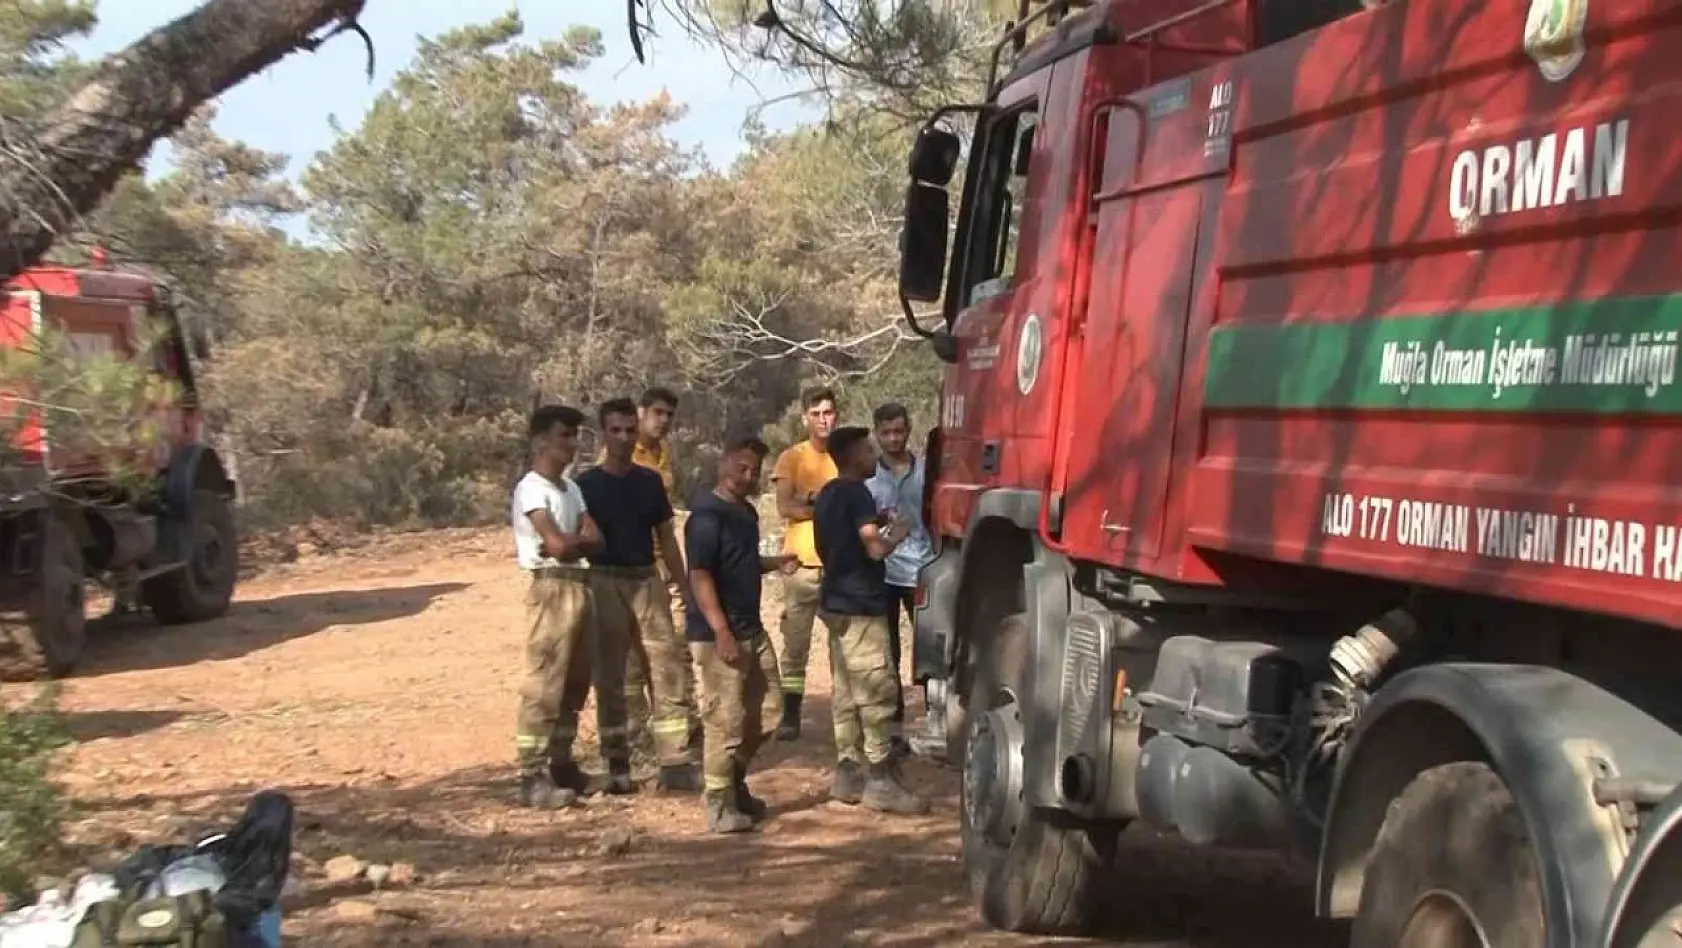 Marmaris'te alev nöbeti tutan orman işçisi: 'Her yer güvenli denilene kadar bu bölgedeyiz'